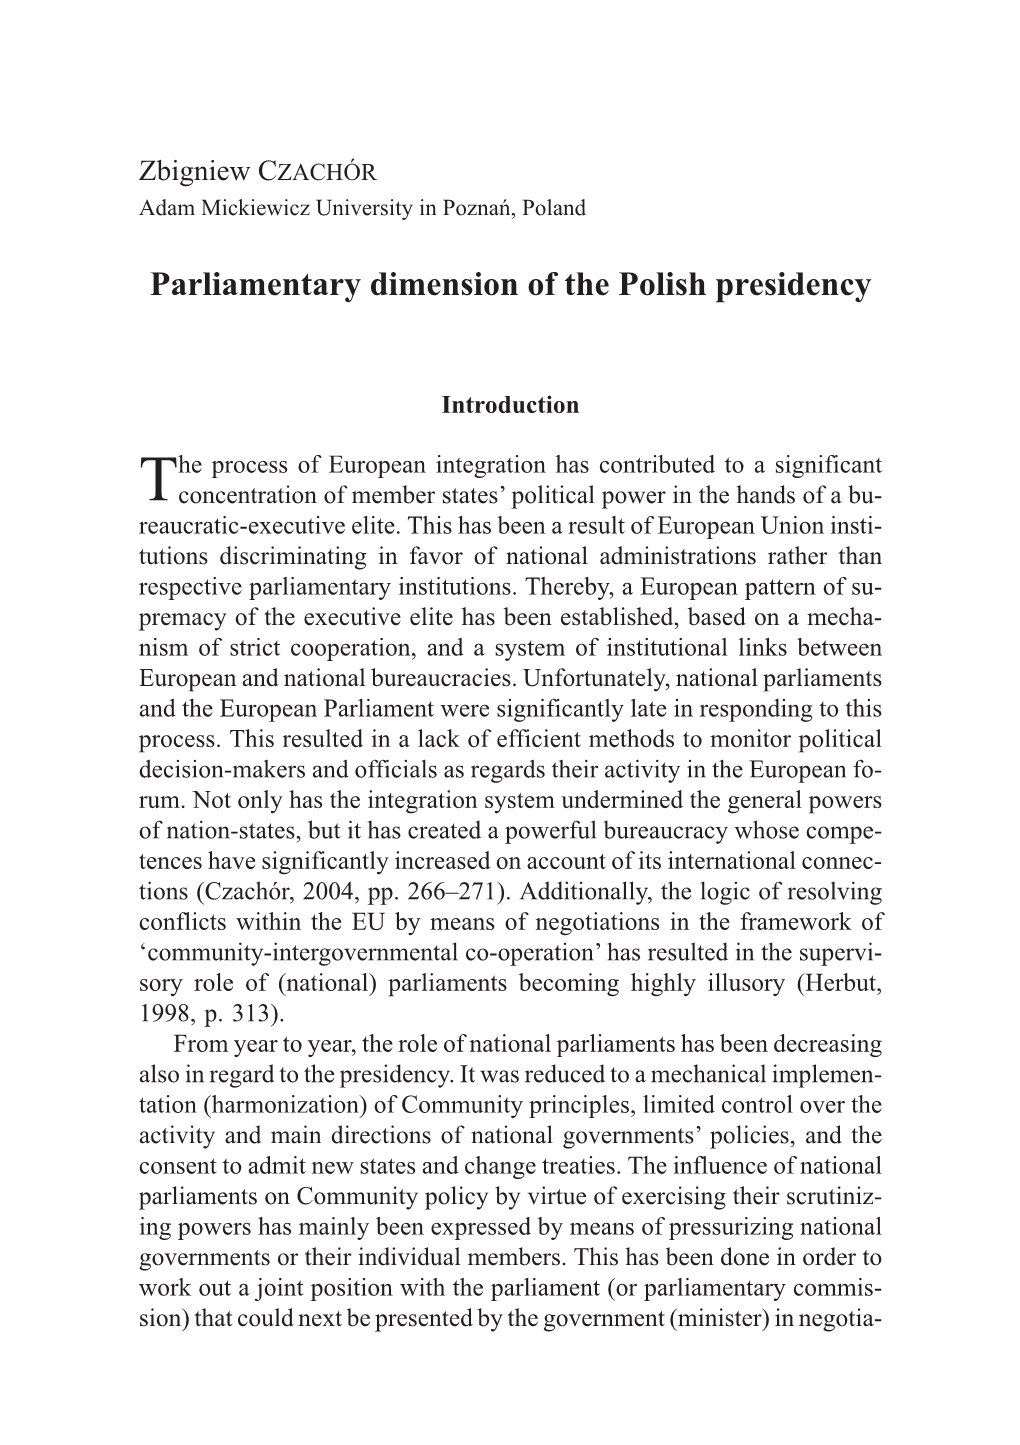 Parliamentary Dimension of the Polish Presidency